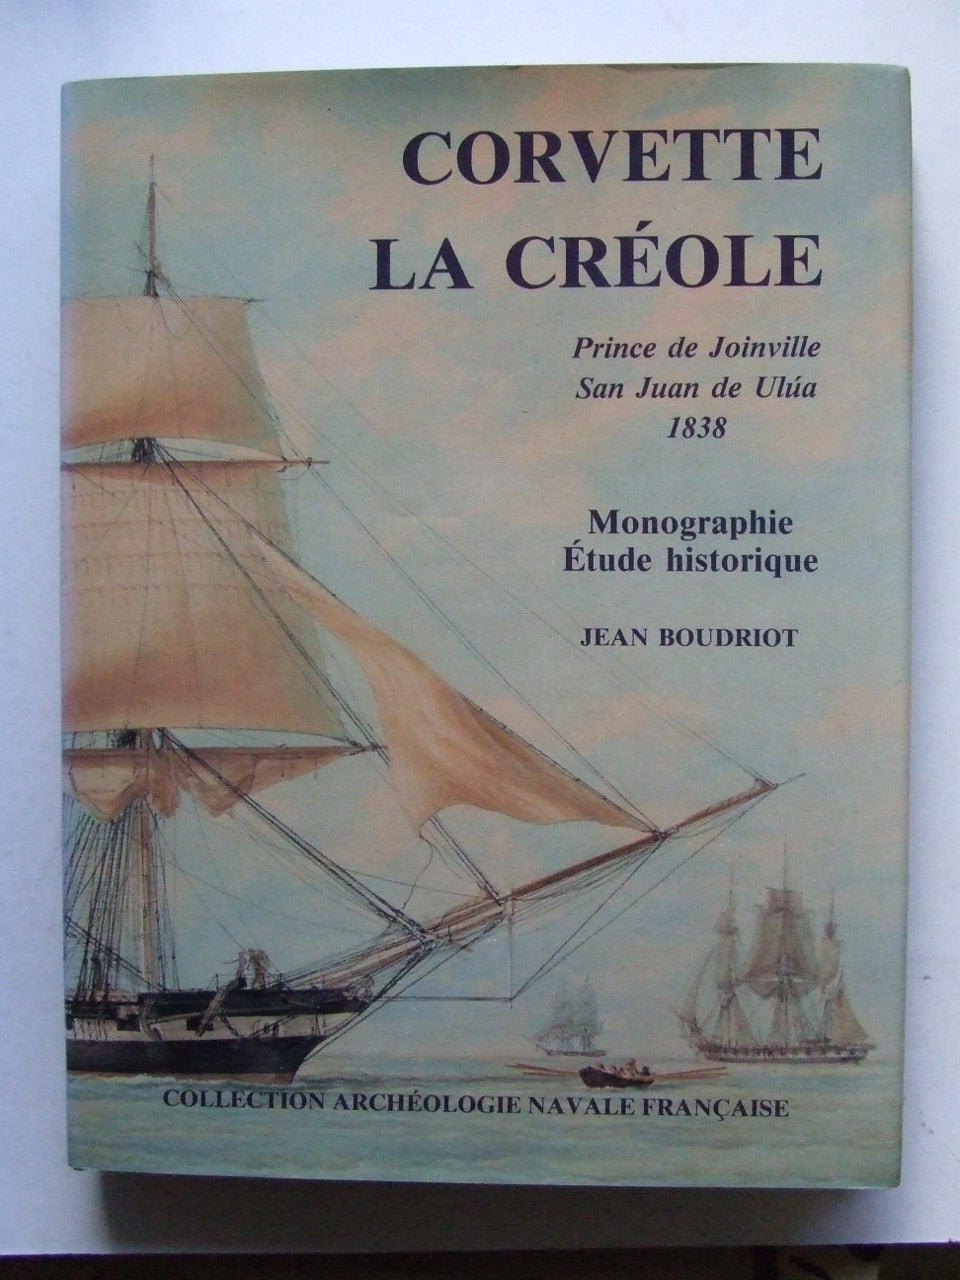 Corvette la Créole,  Prince de Joinville San Juan de Ulúa, 1838  monographie étude historique